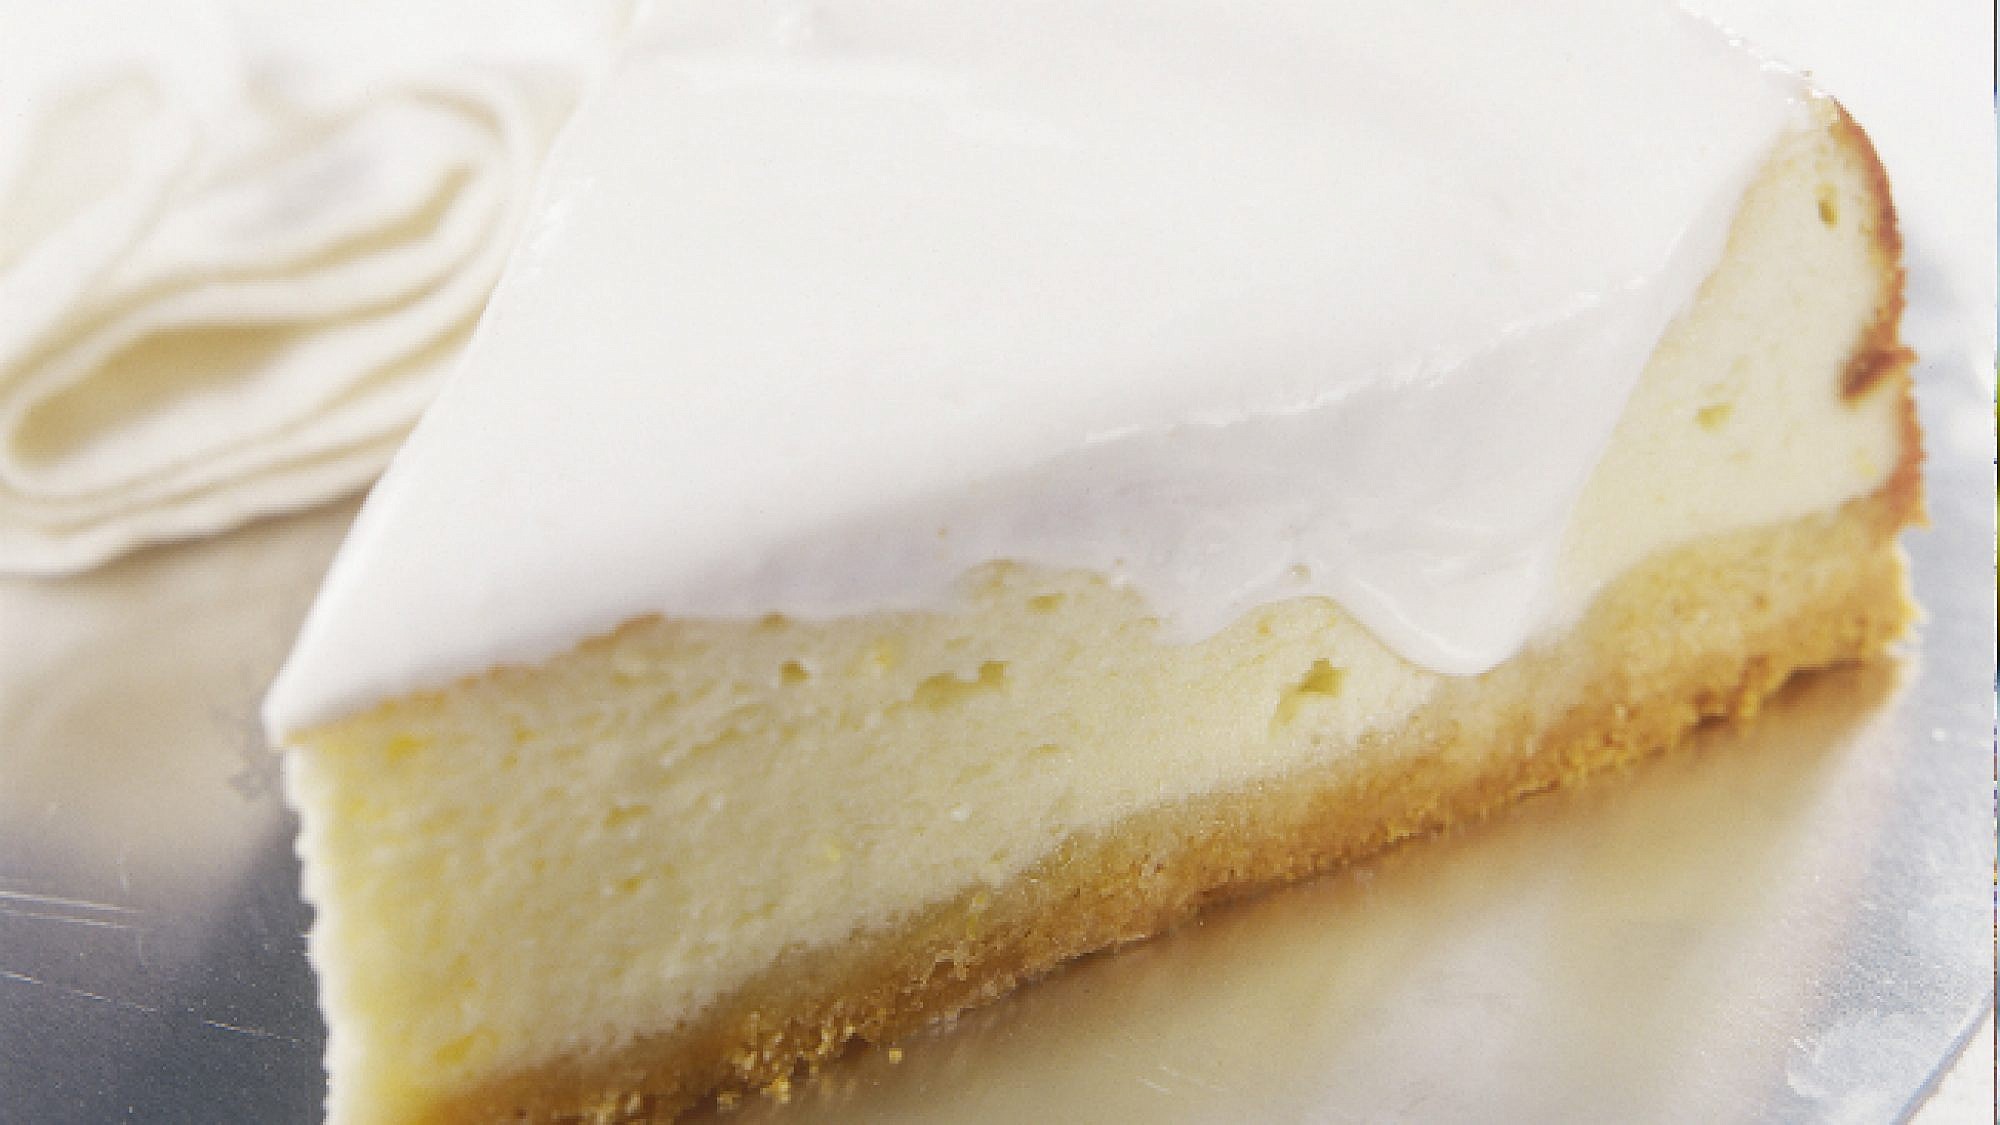 עוגת גבינה אפויה בציפוי שמנת חמוצה. צילום: דניה ויינר